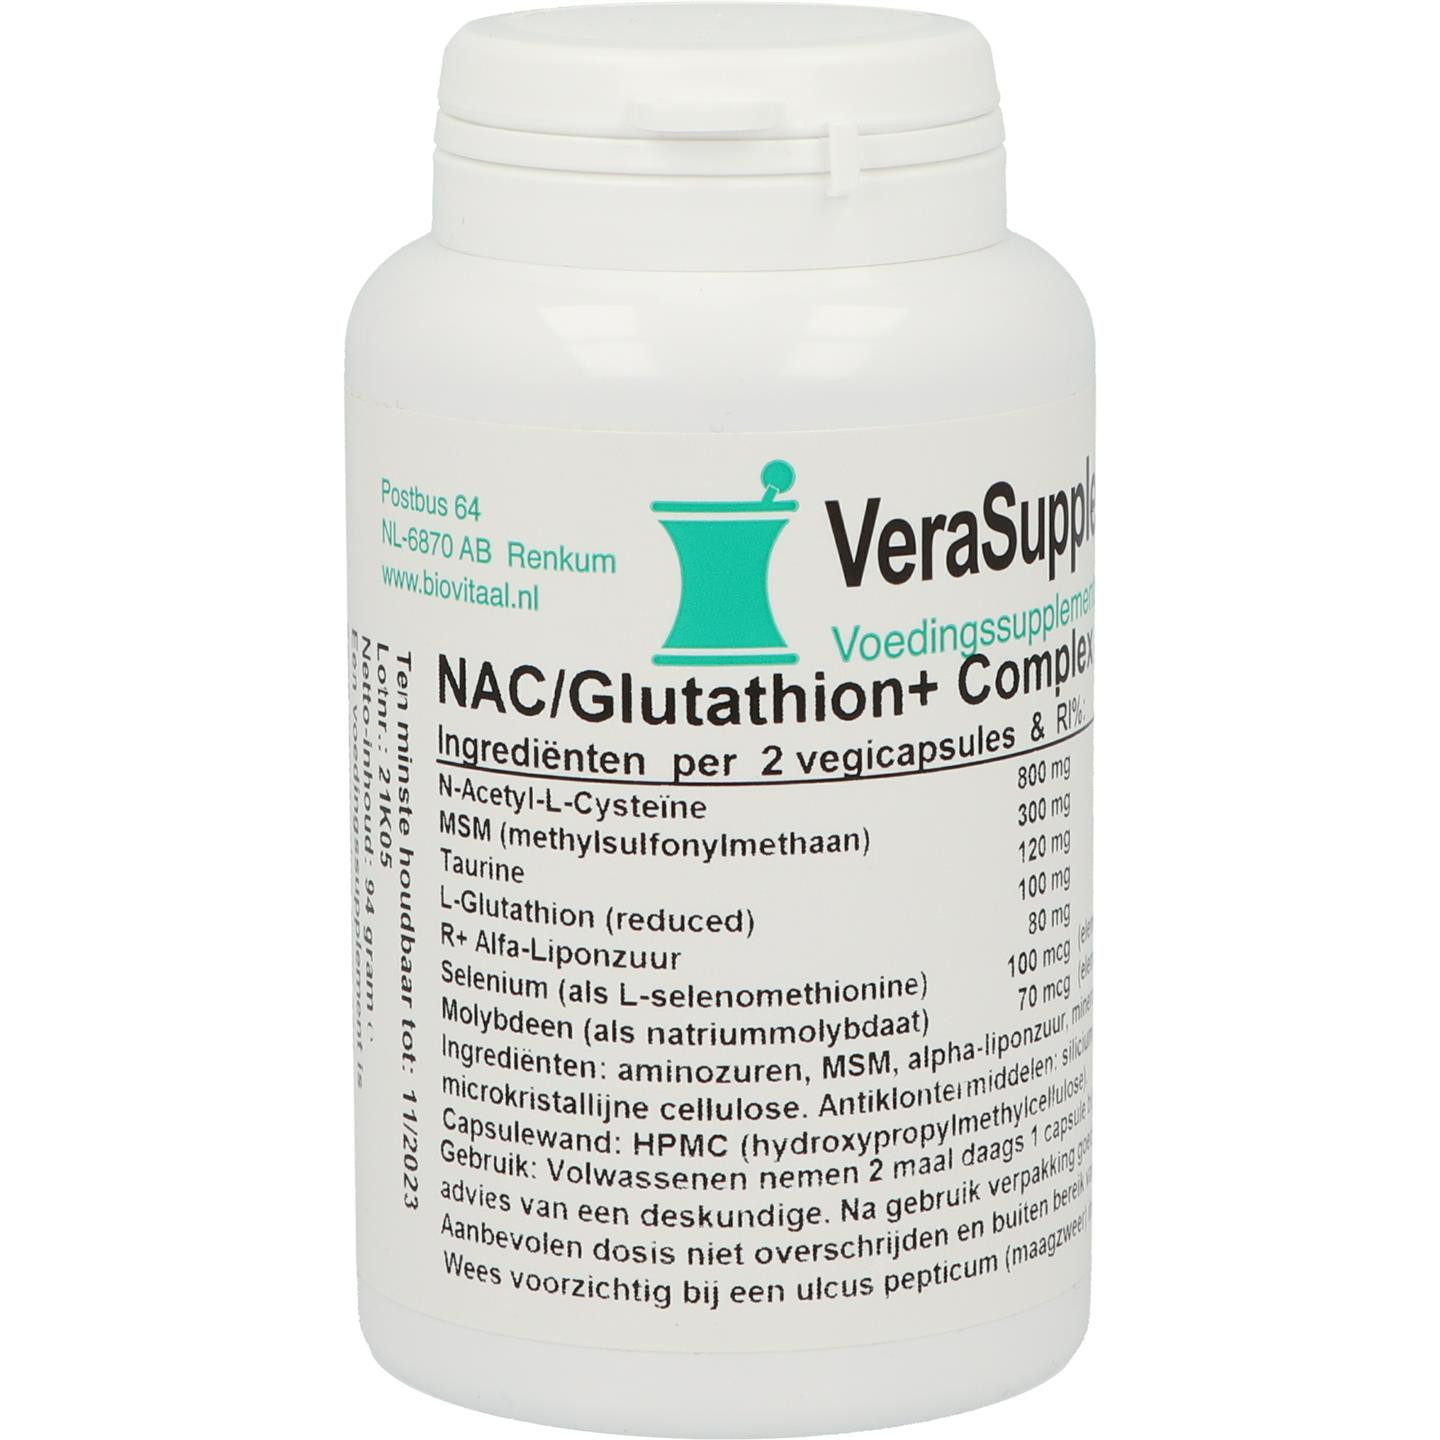 NAC/Glutathion+ complex